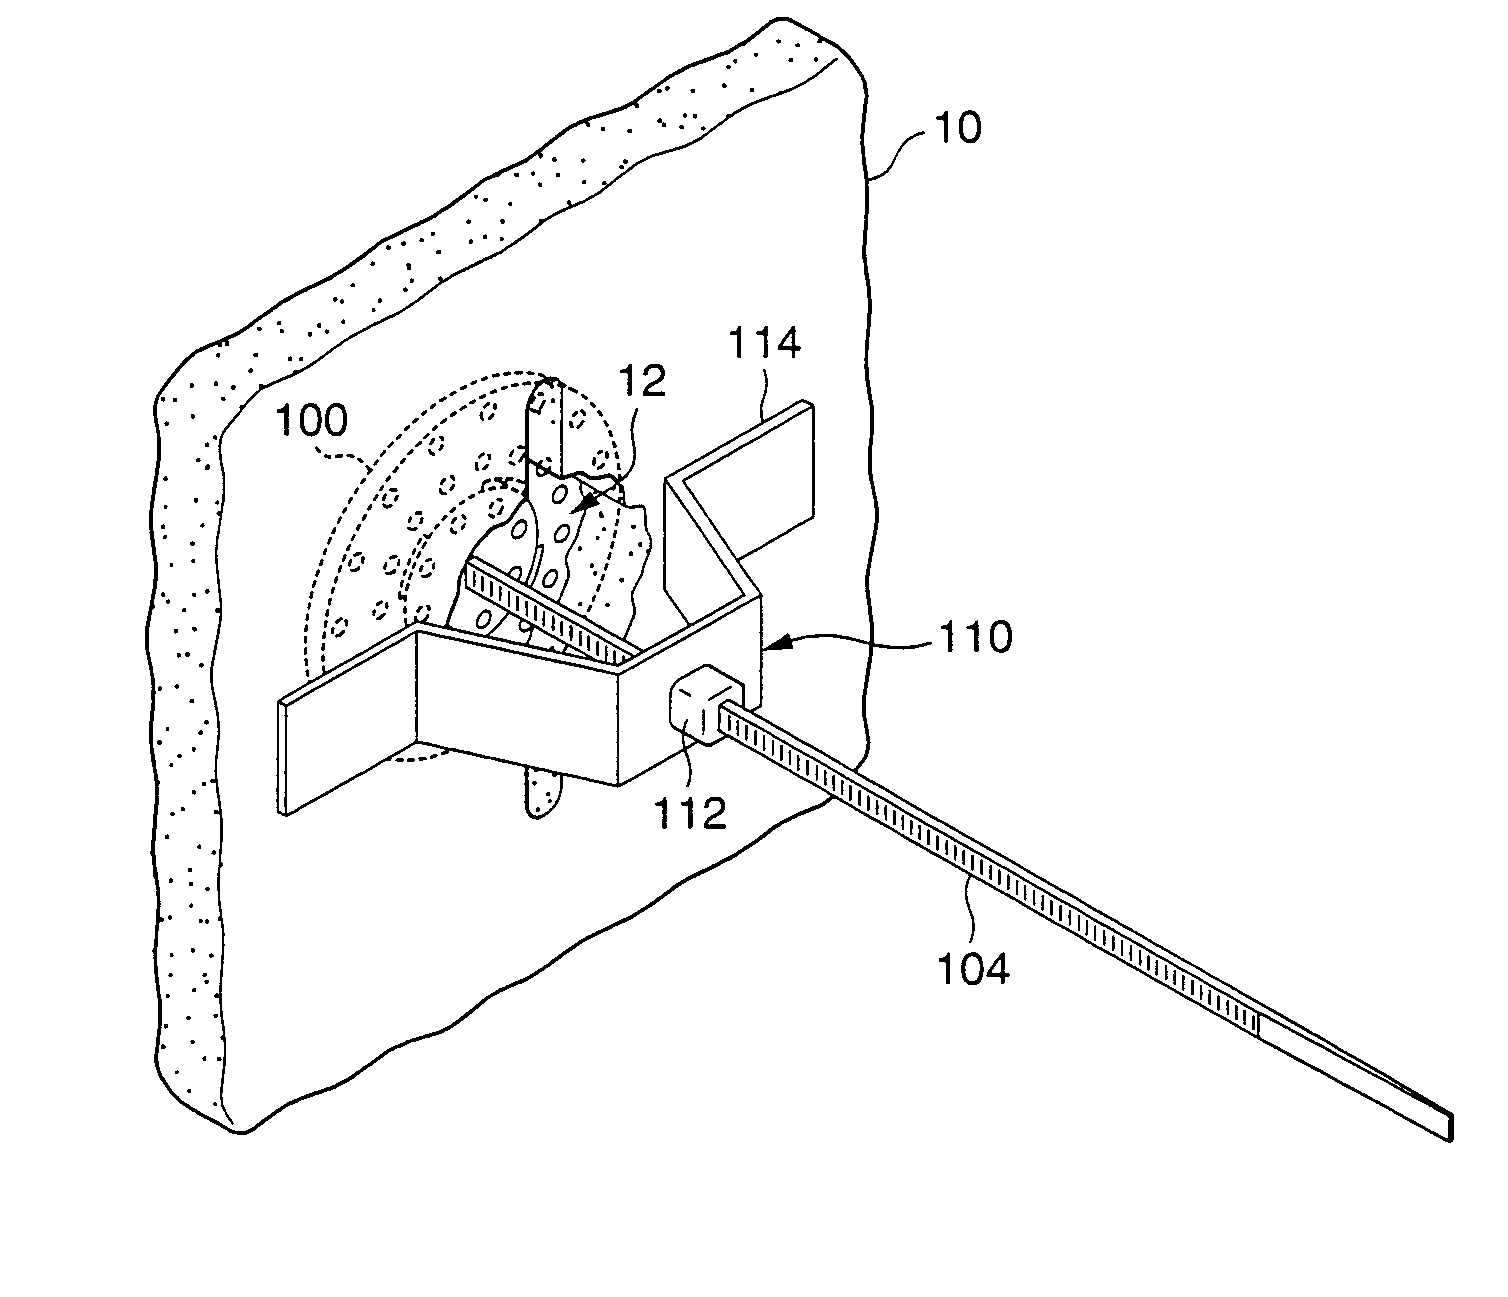 Method and/or apparatus for drywall repair